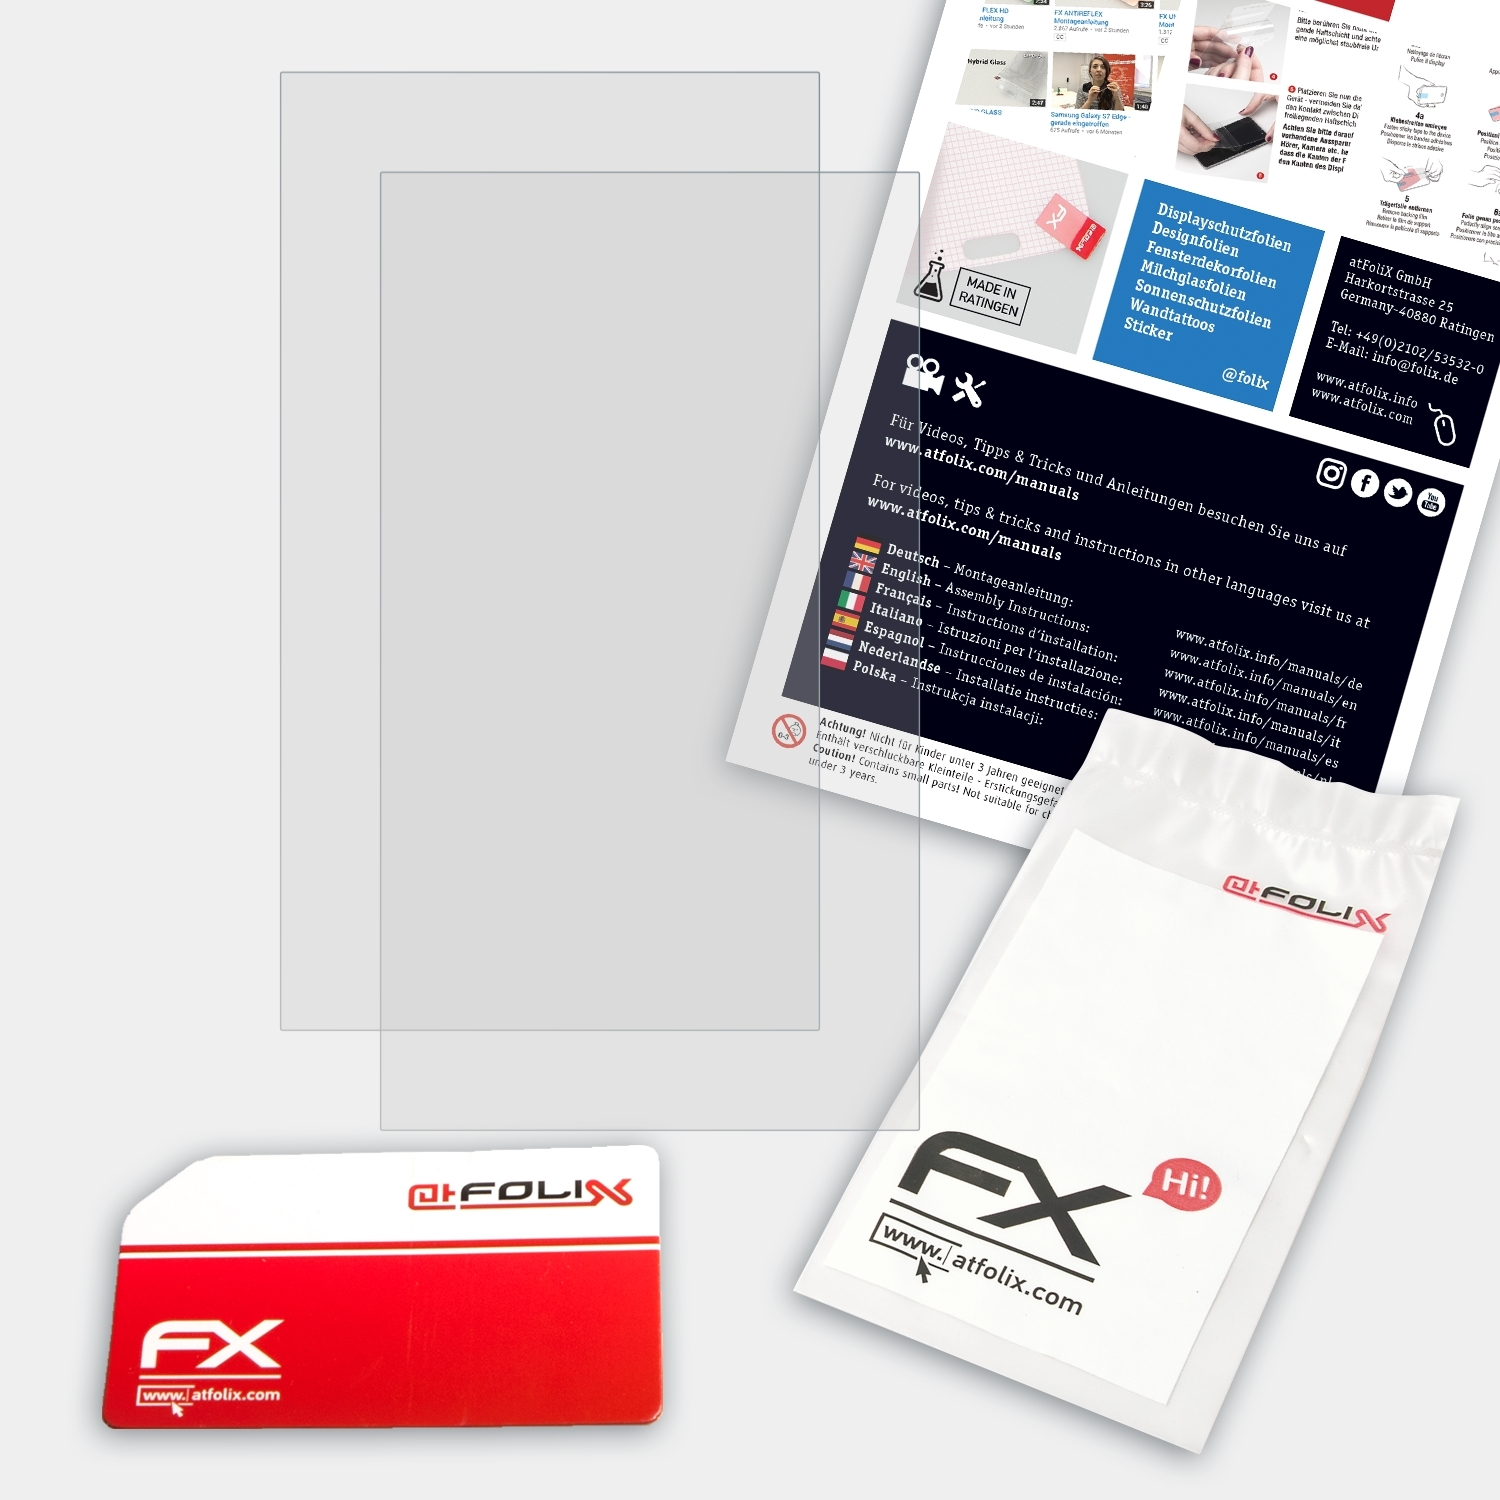 D2) Pad-Ex 01 FX-Antireflex ATFOLIX P8 ecom Displayschutz(für 2x